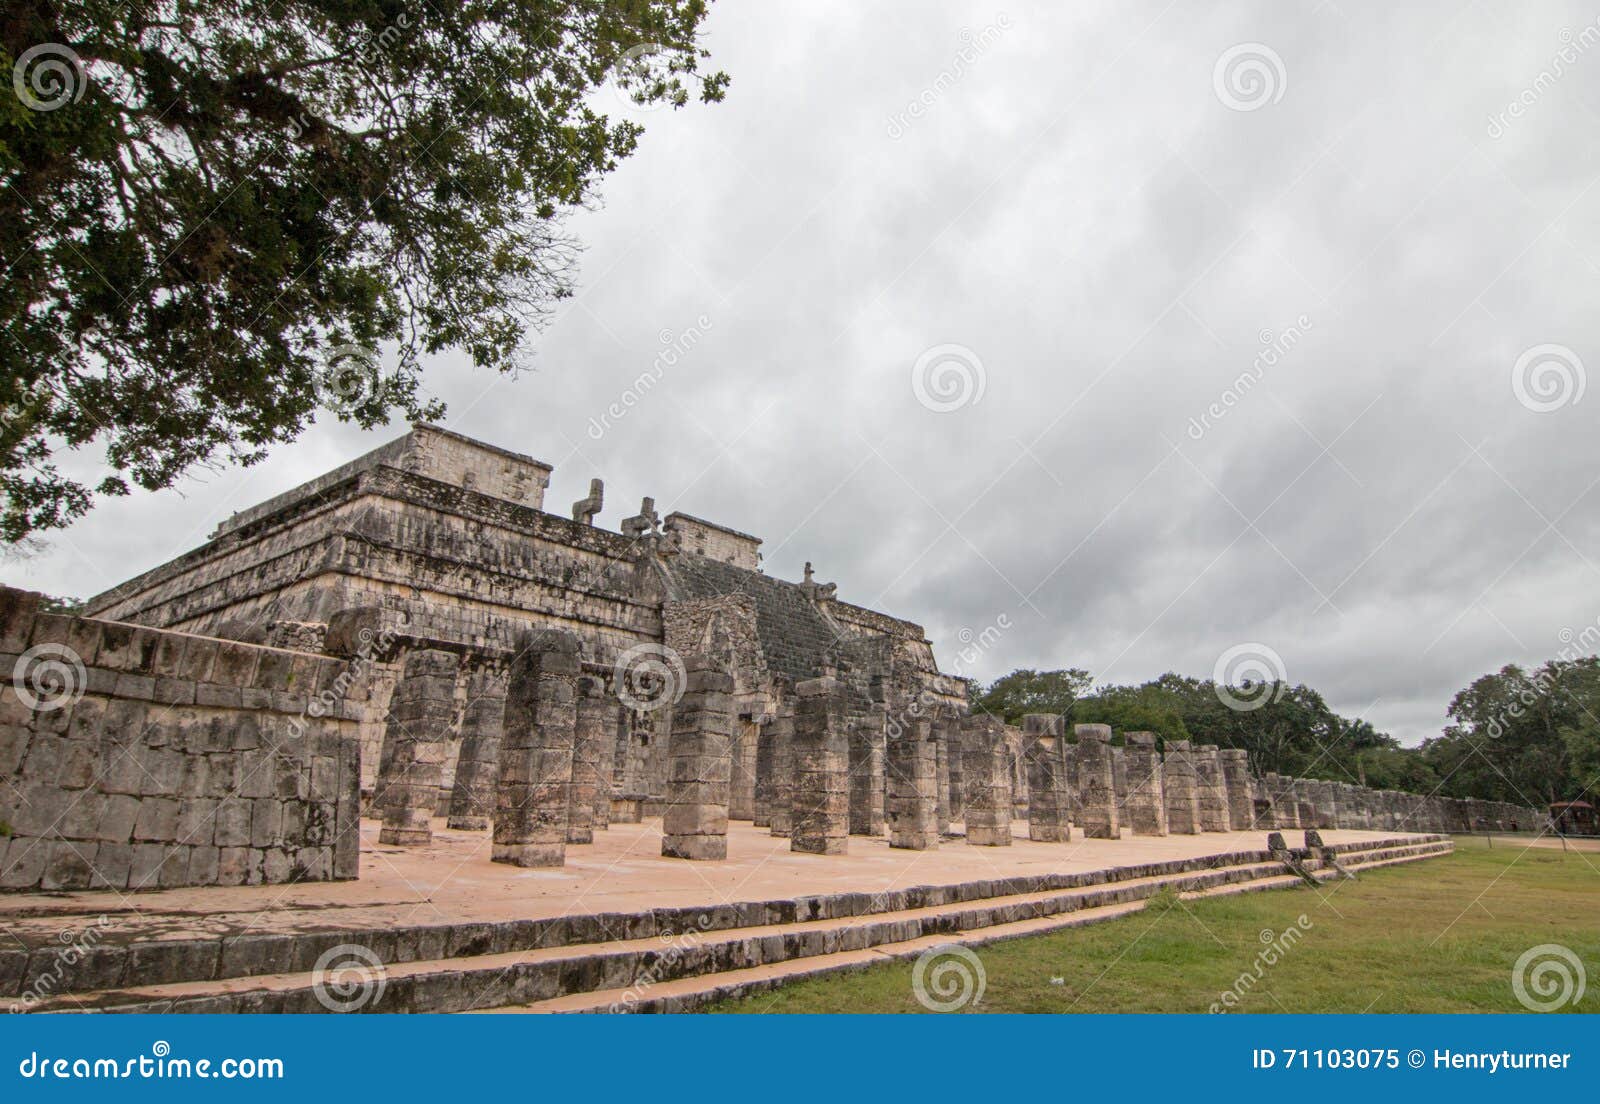 templo de los guerreros temple of the warriors at chichen itz mayan ruins on mexico's yucatan peninsula